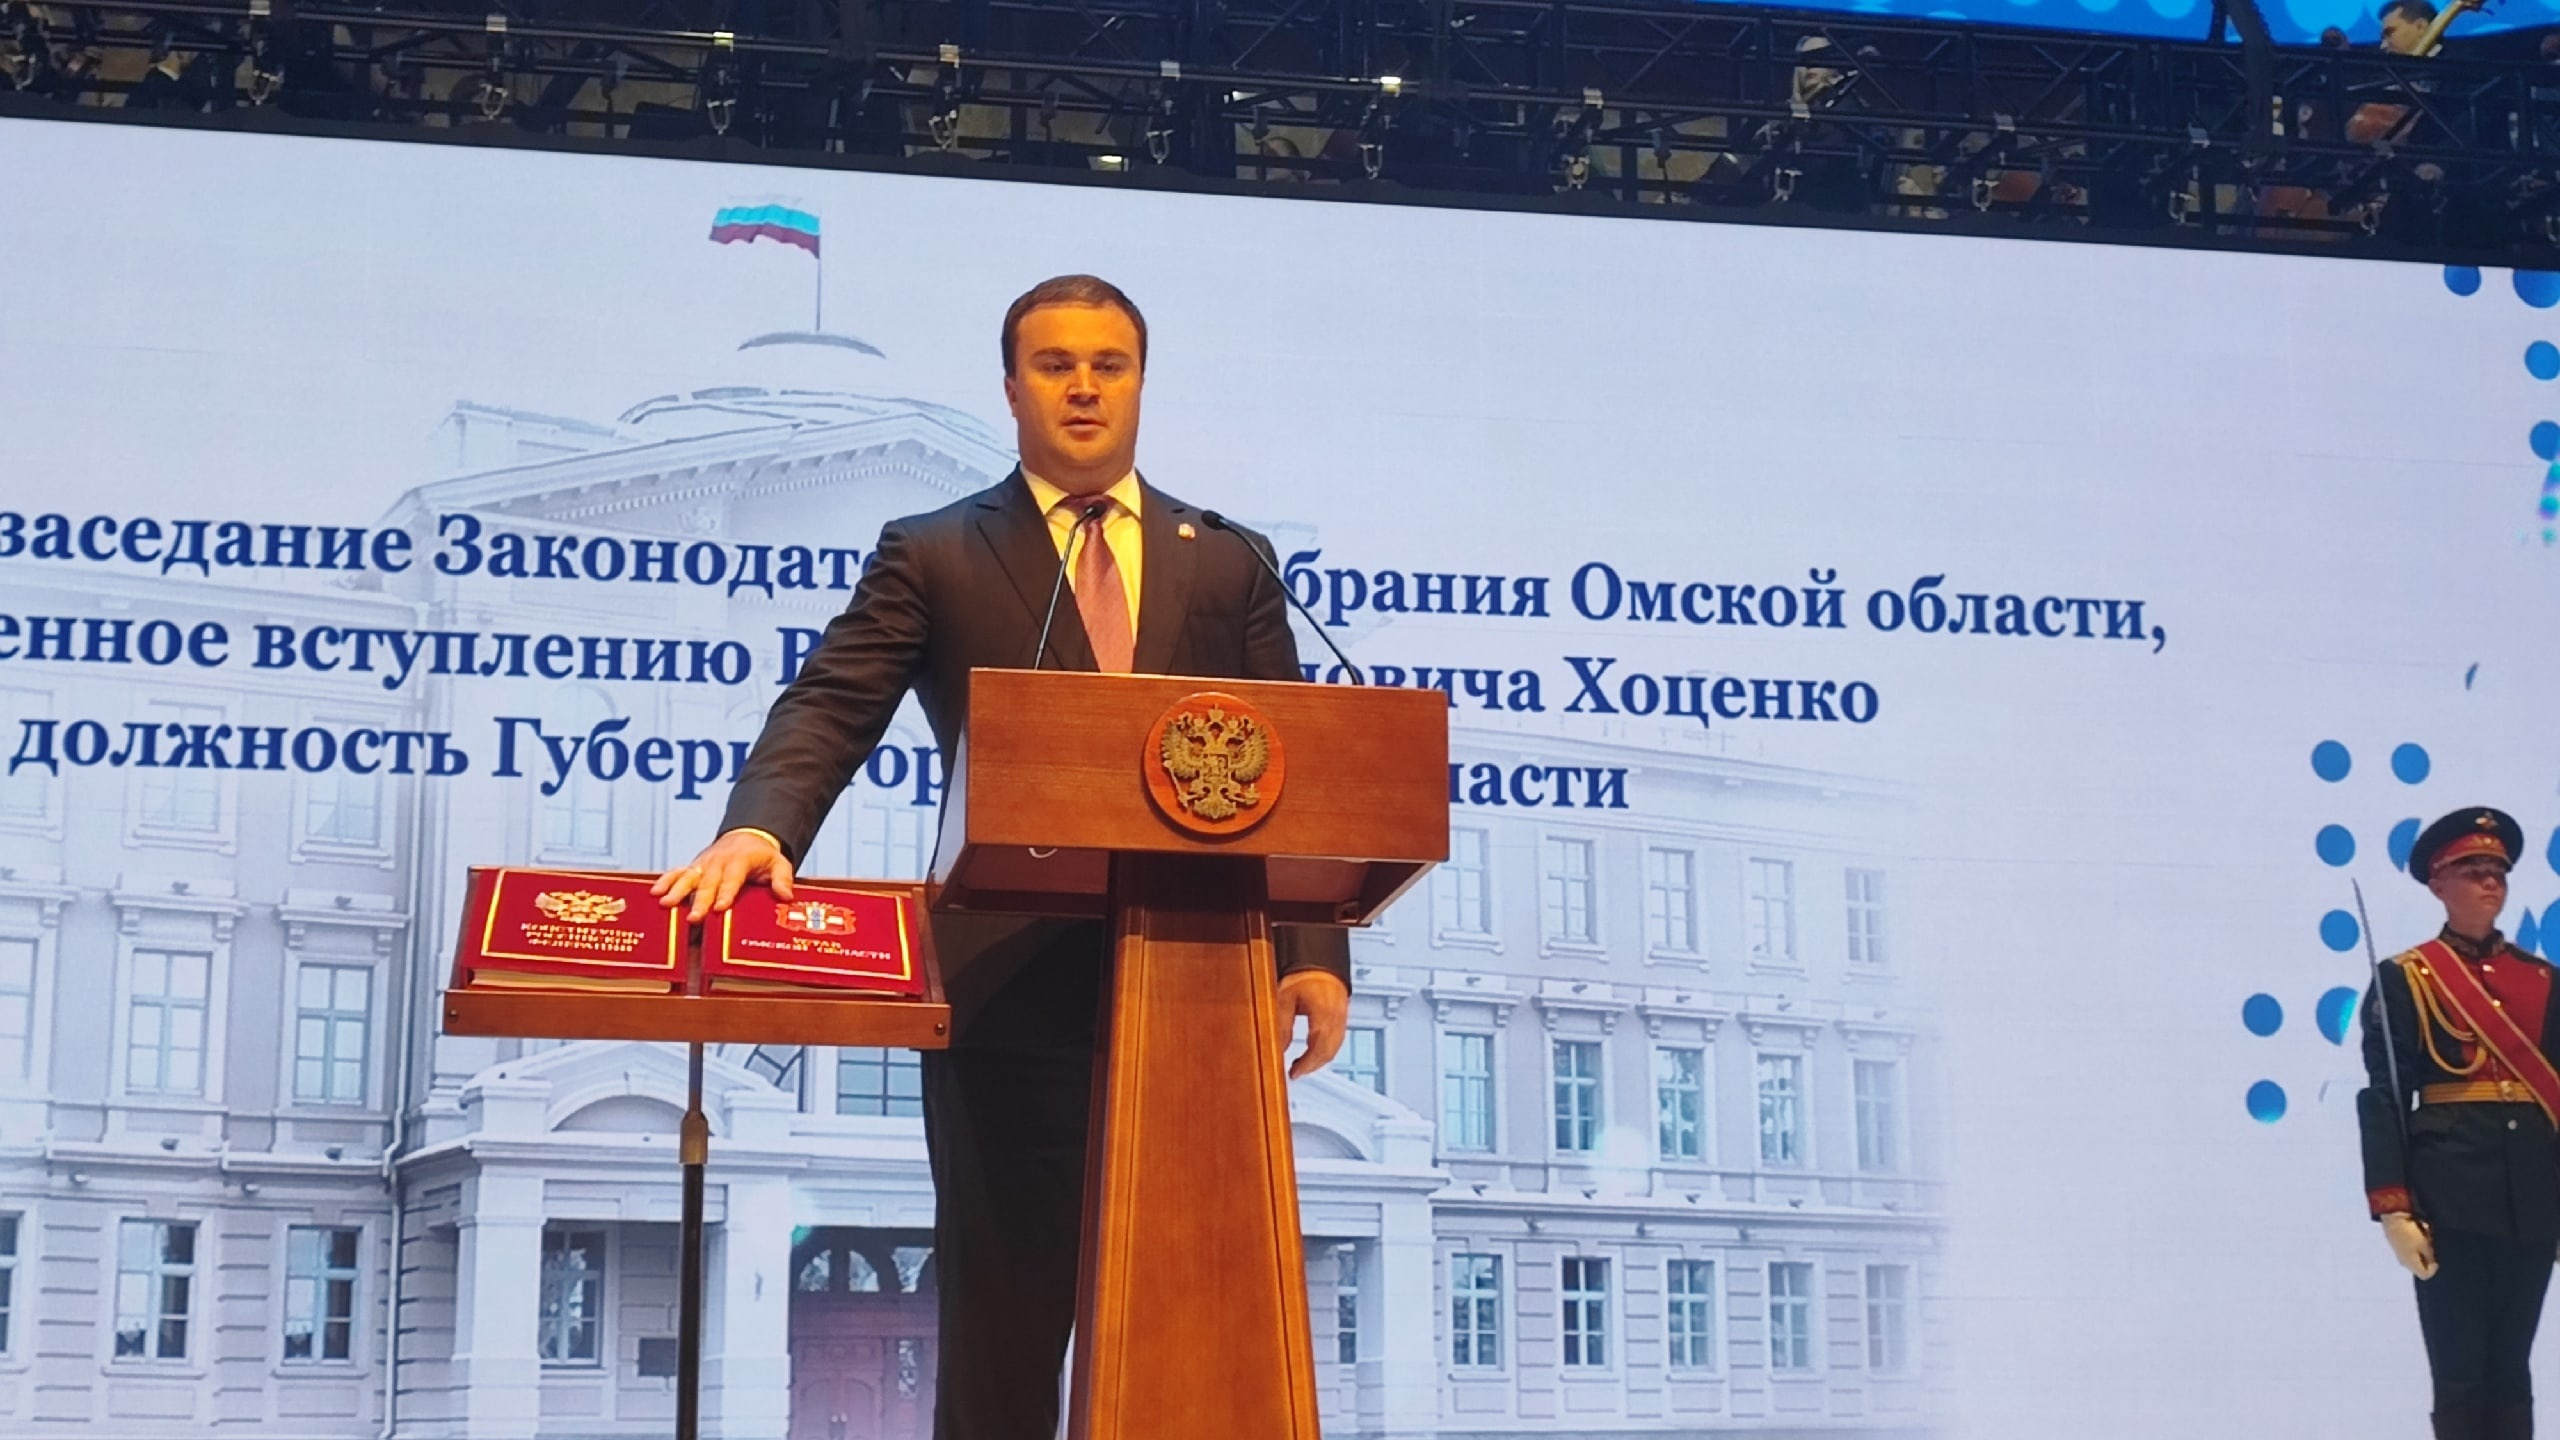 Хоценко вступил в должность губернатора: онлайн из Концертного зала